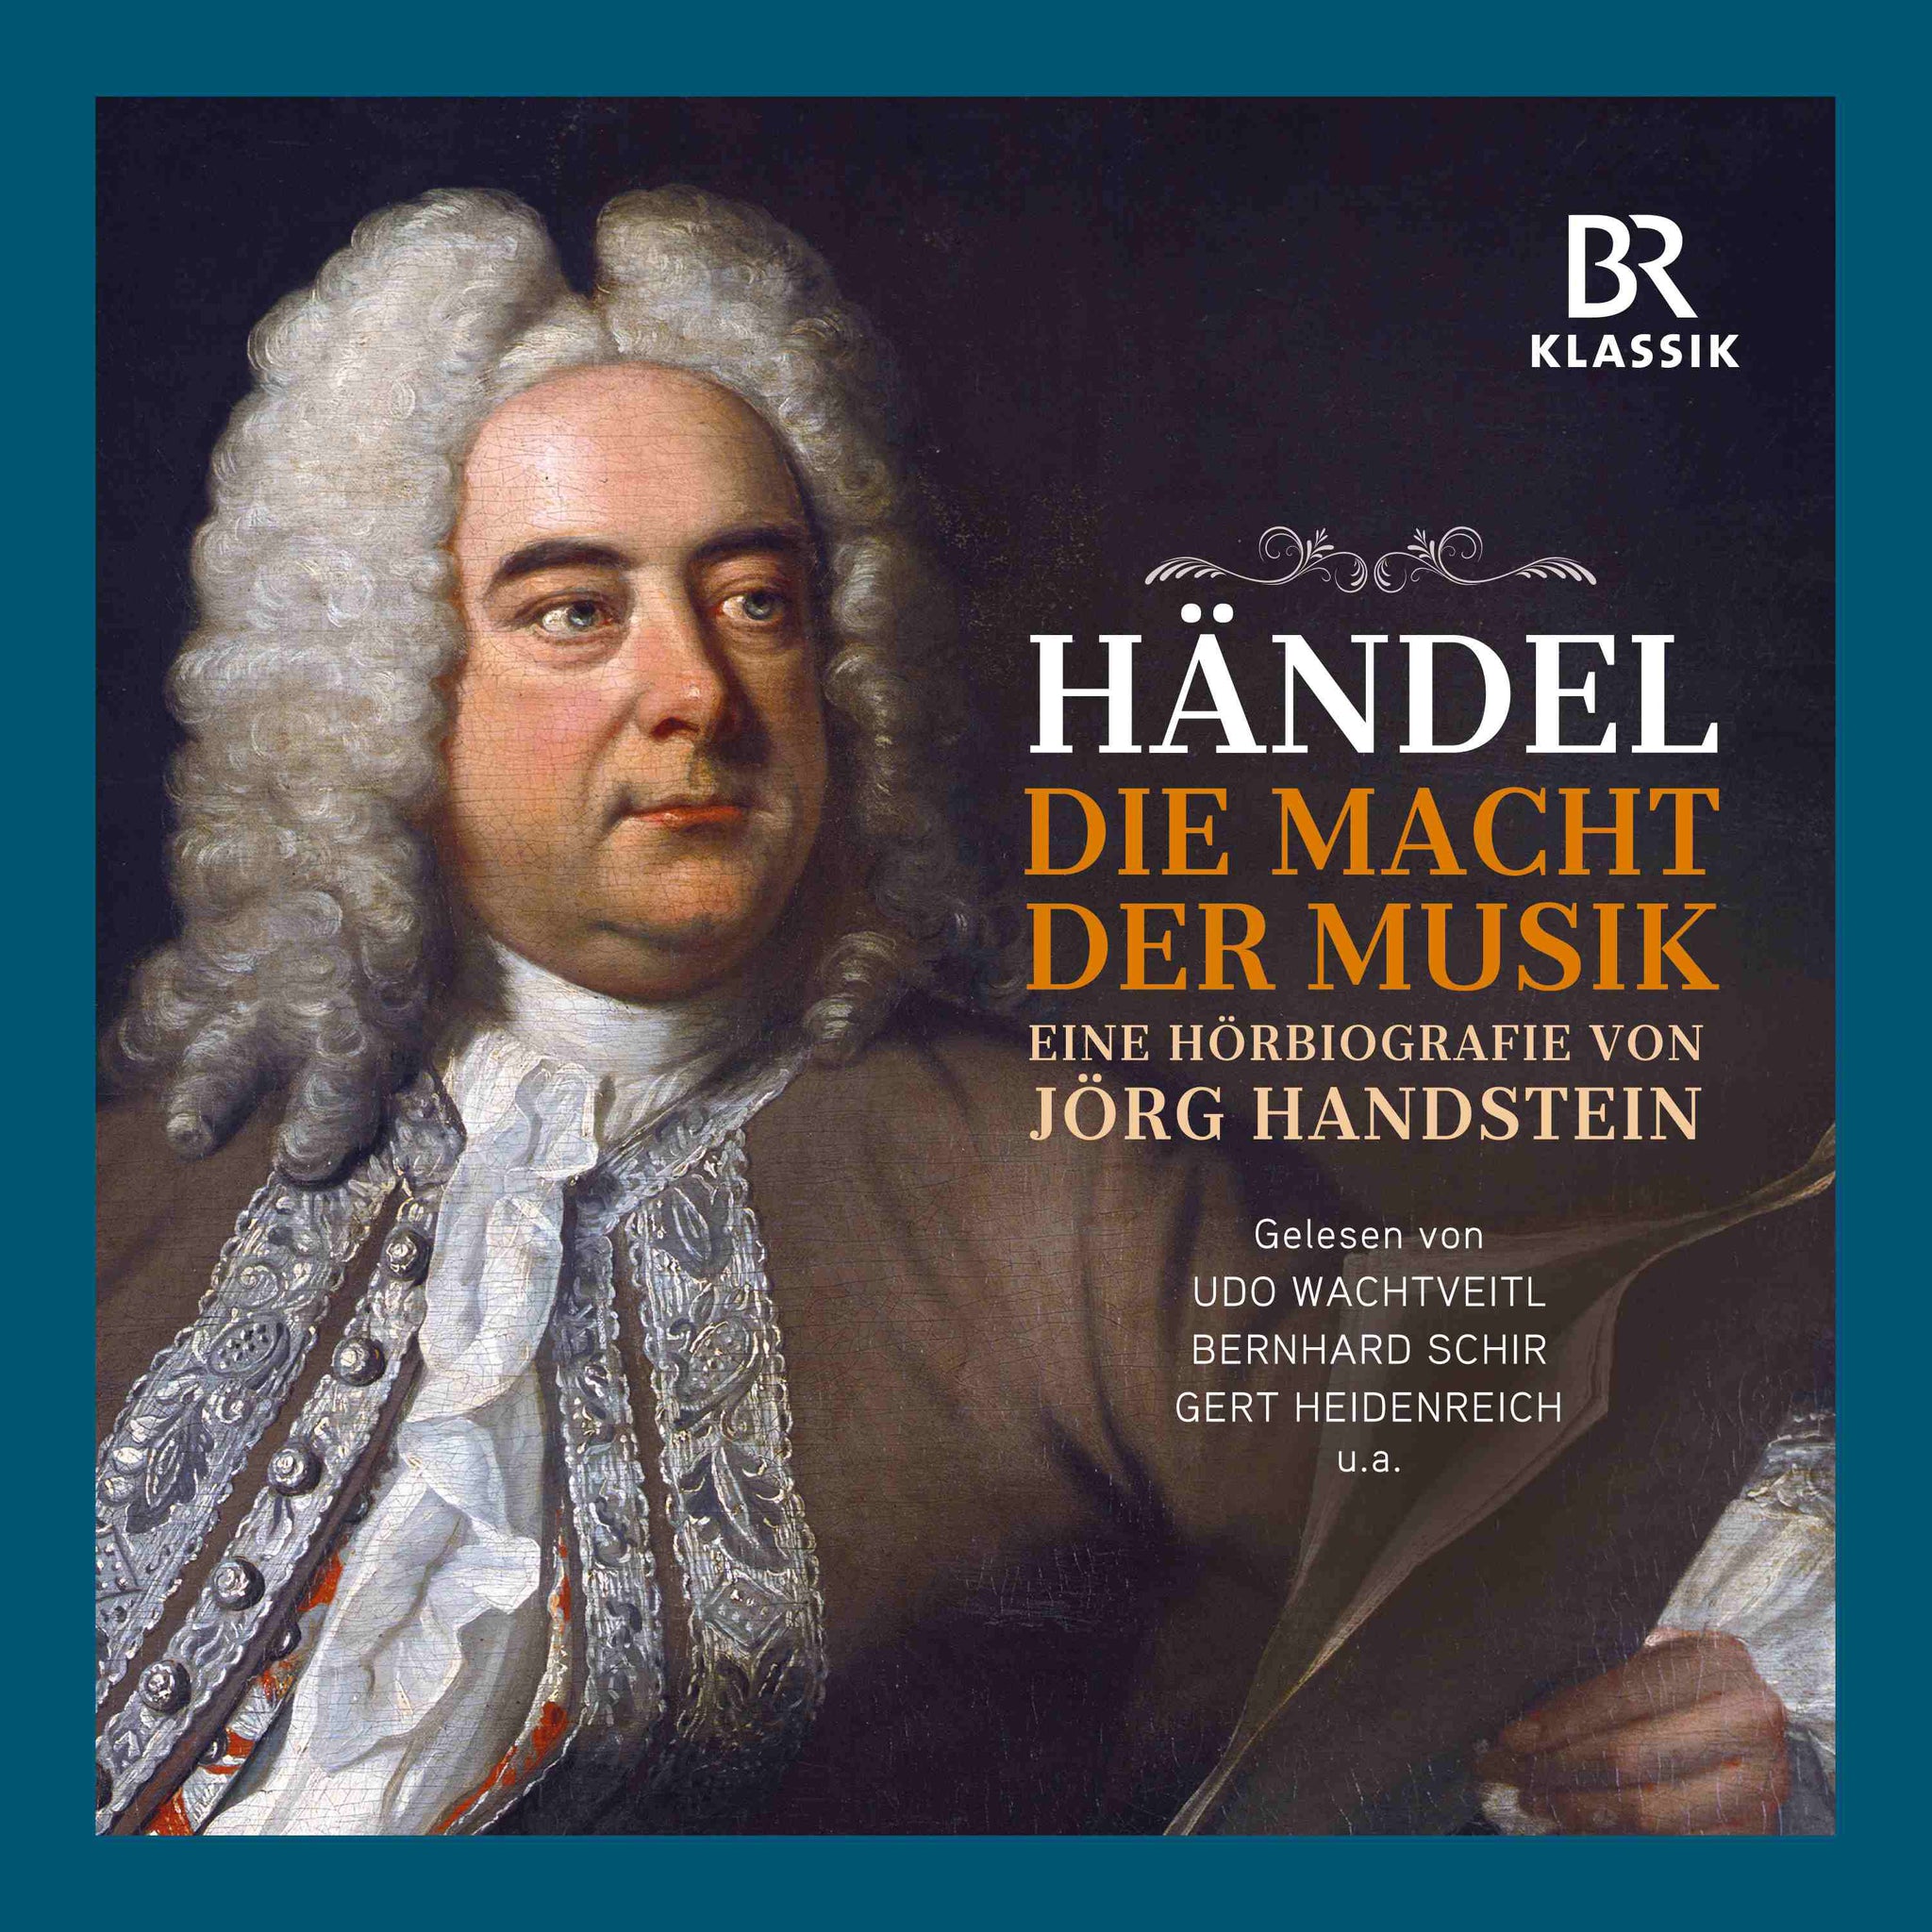 Handel: Die Macht der Musik - The Power of Music (In German)